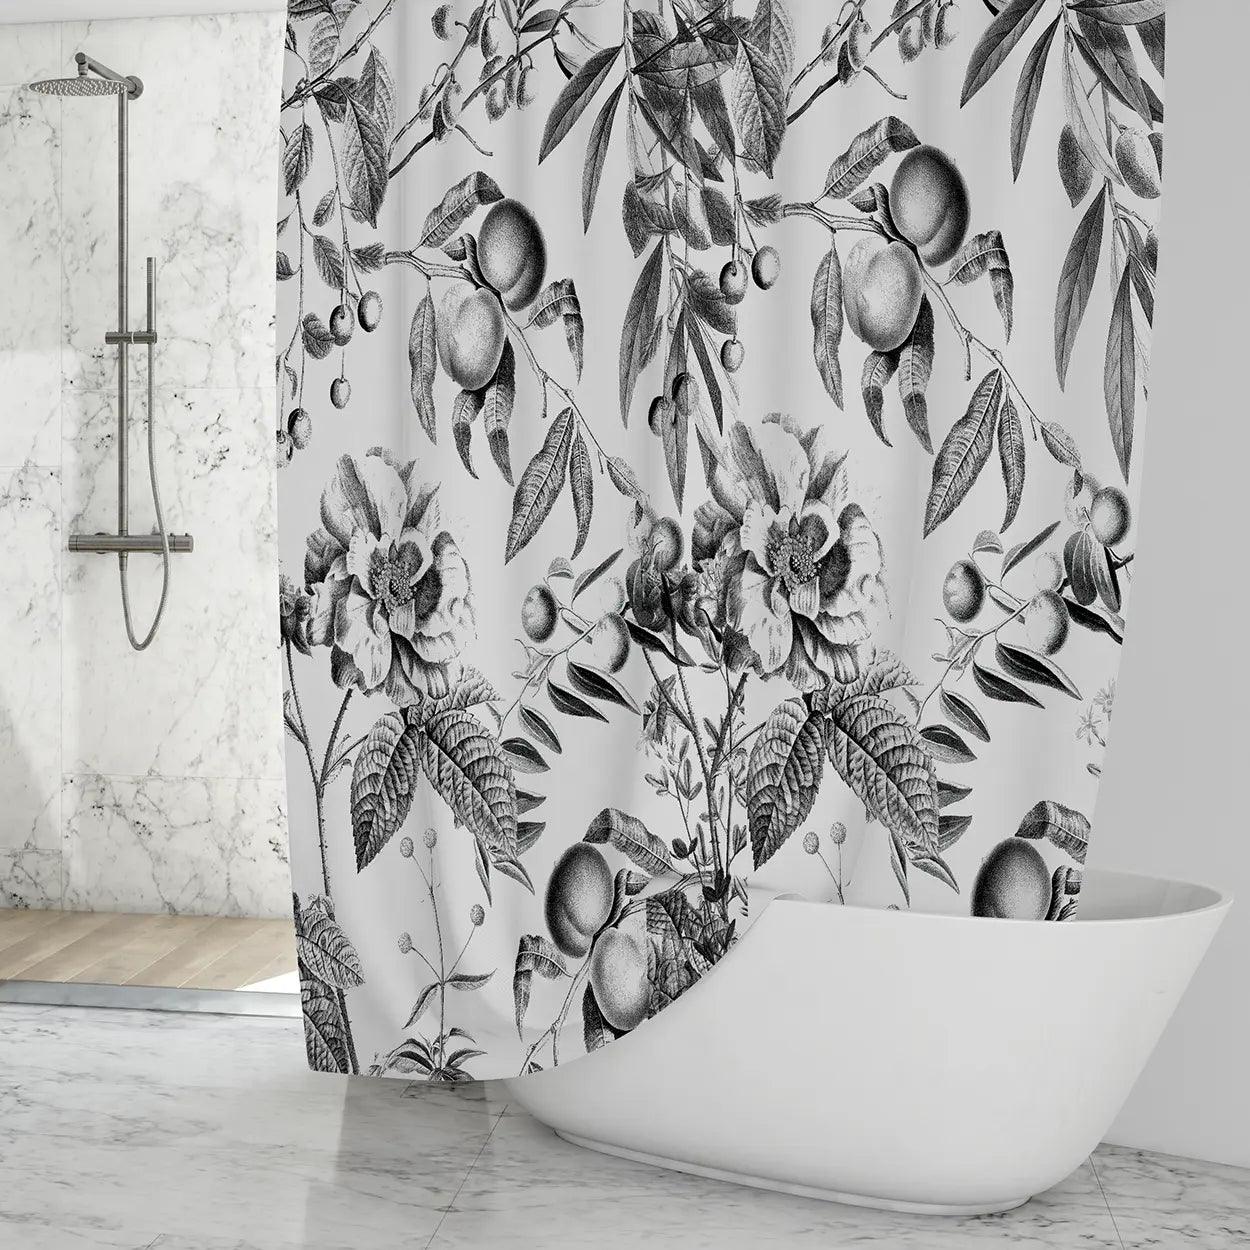 Custom Shower Curtain -Qstomize.com